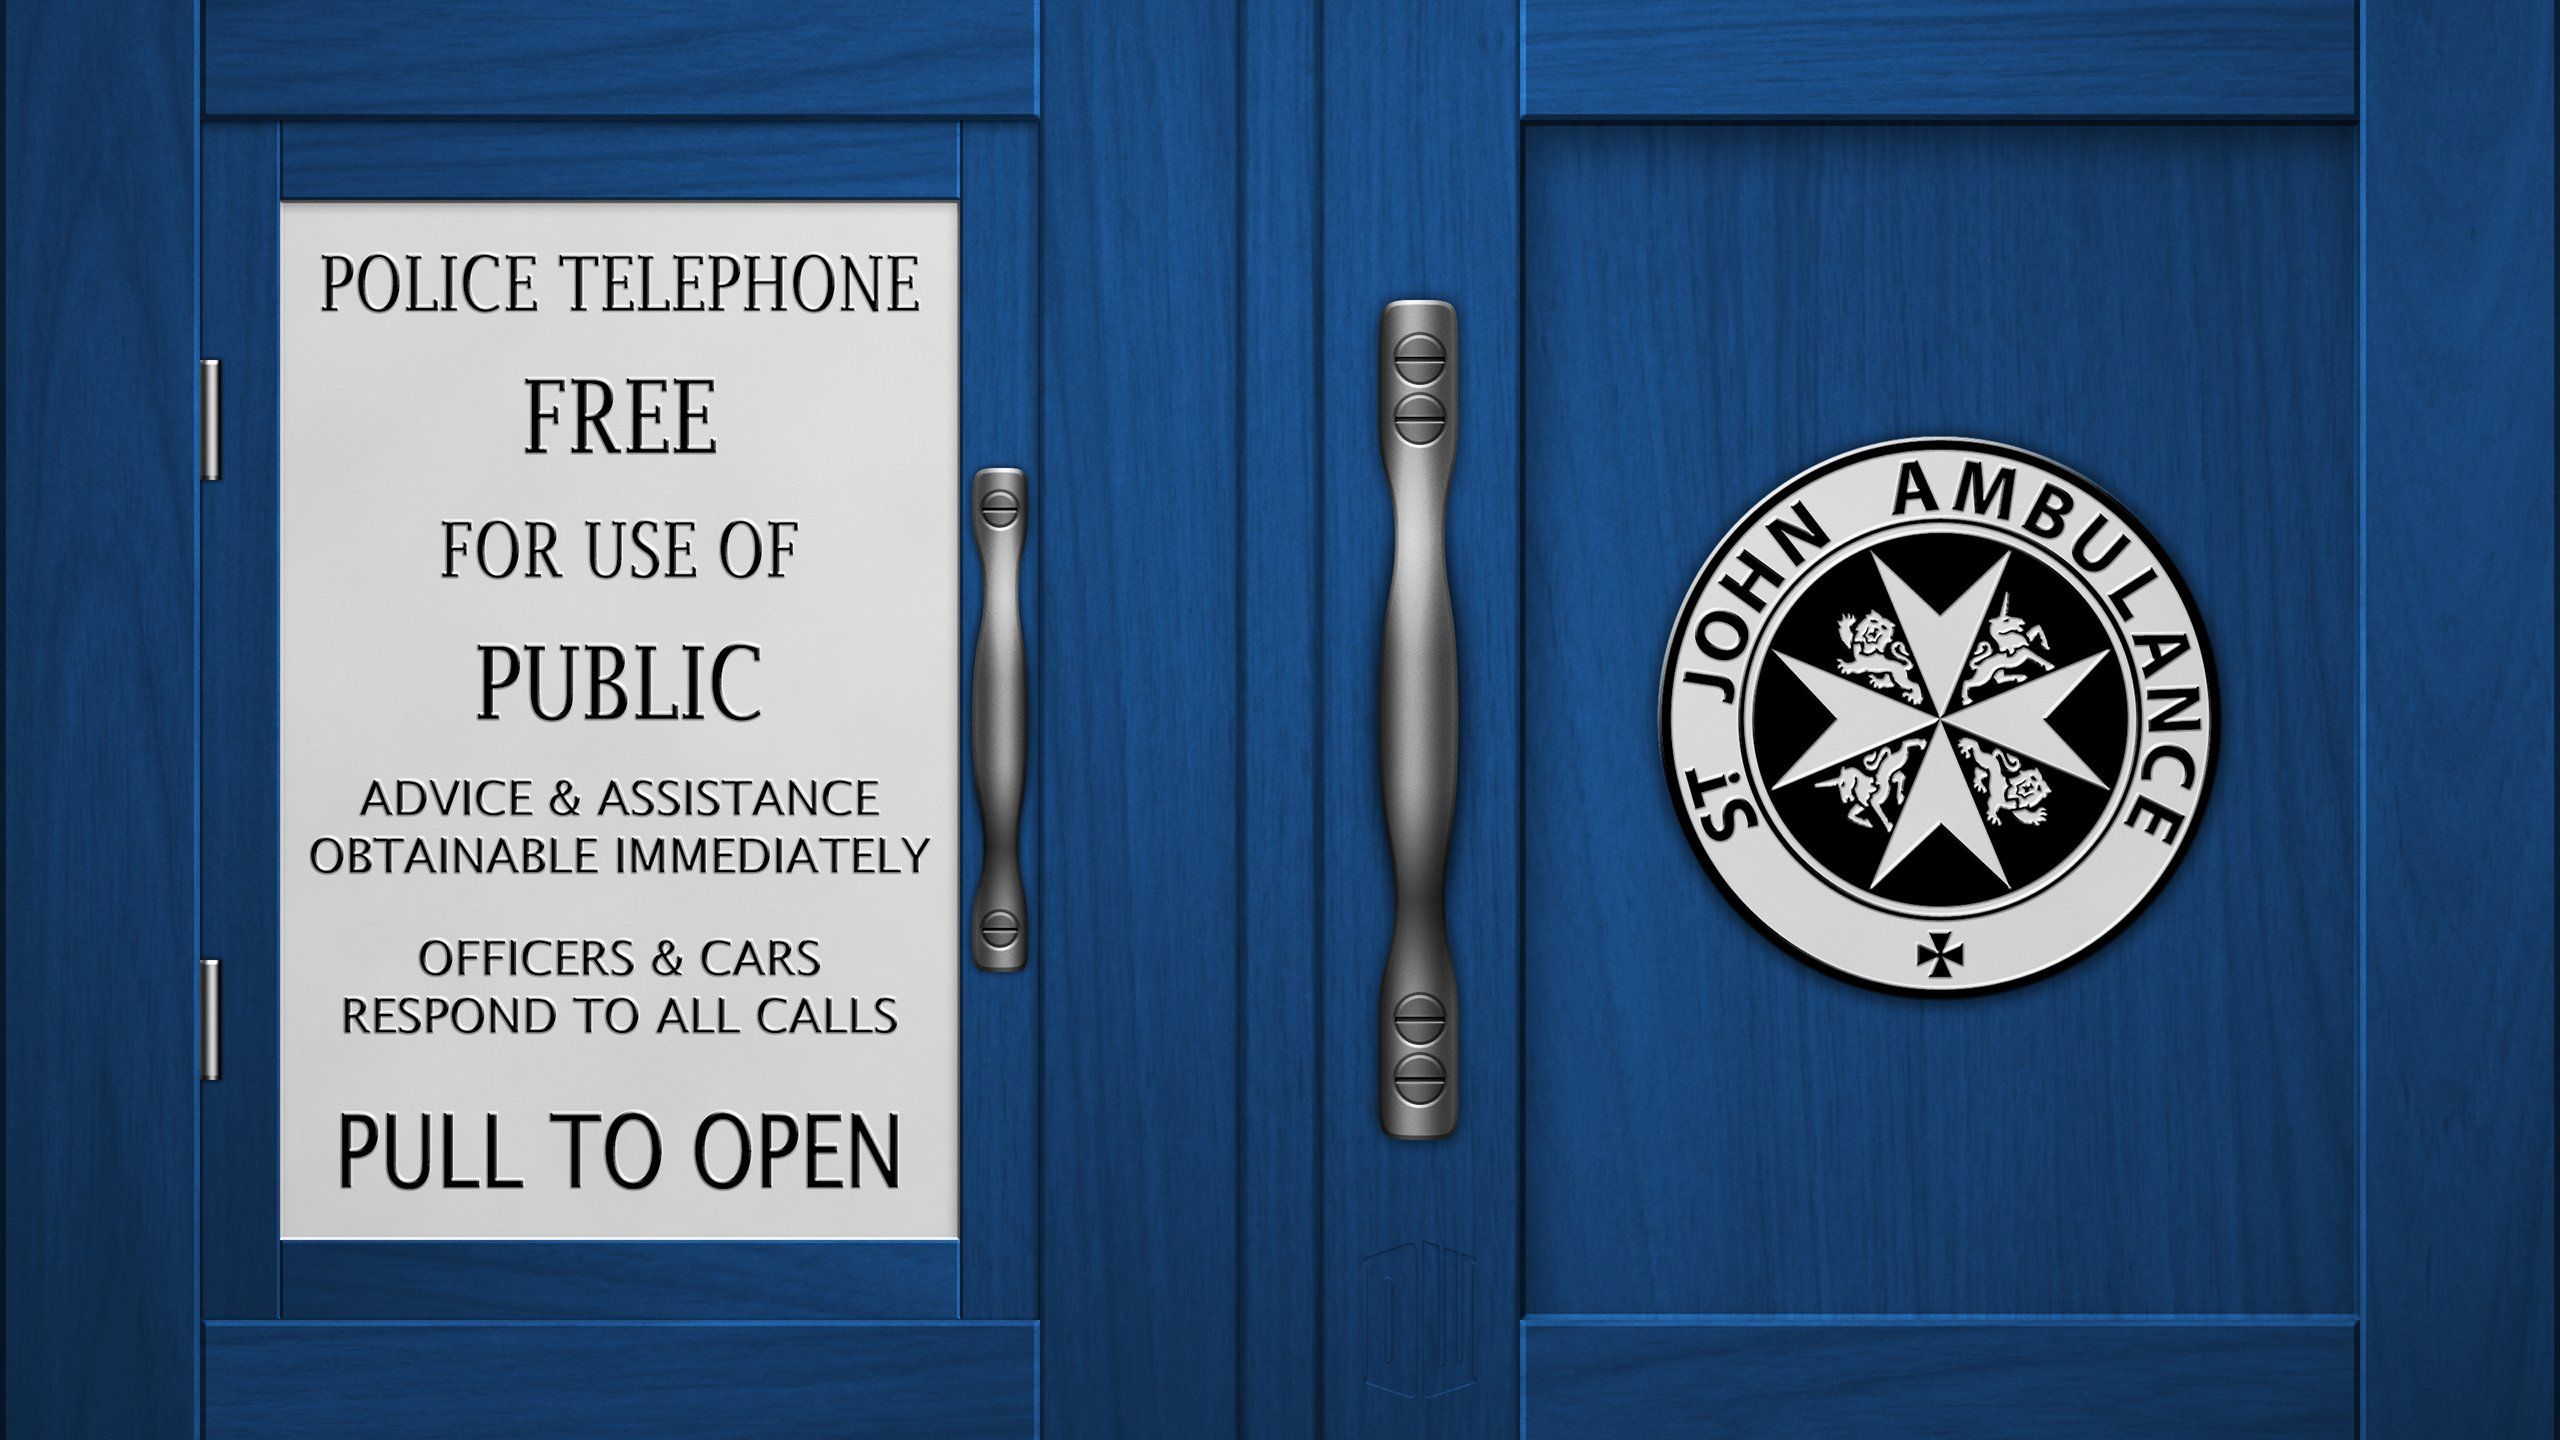 TARDIS Door Doctor Who wallpaper | 2560x1440 | 397834 | WallpaperUP